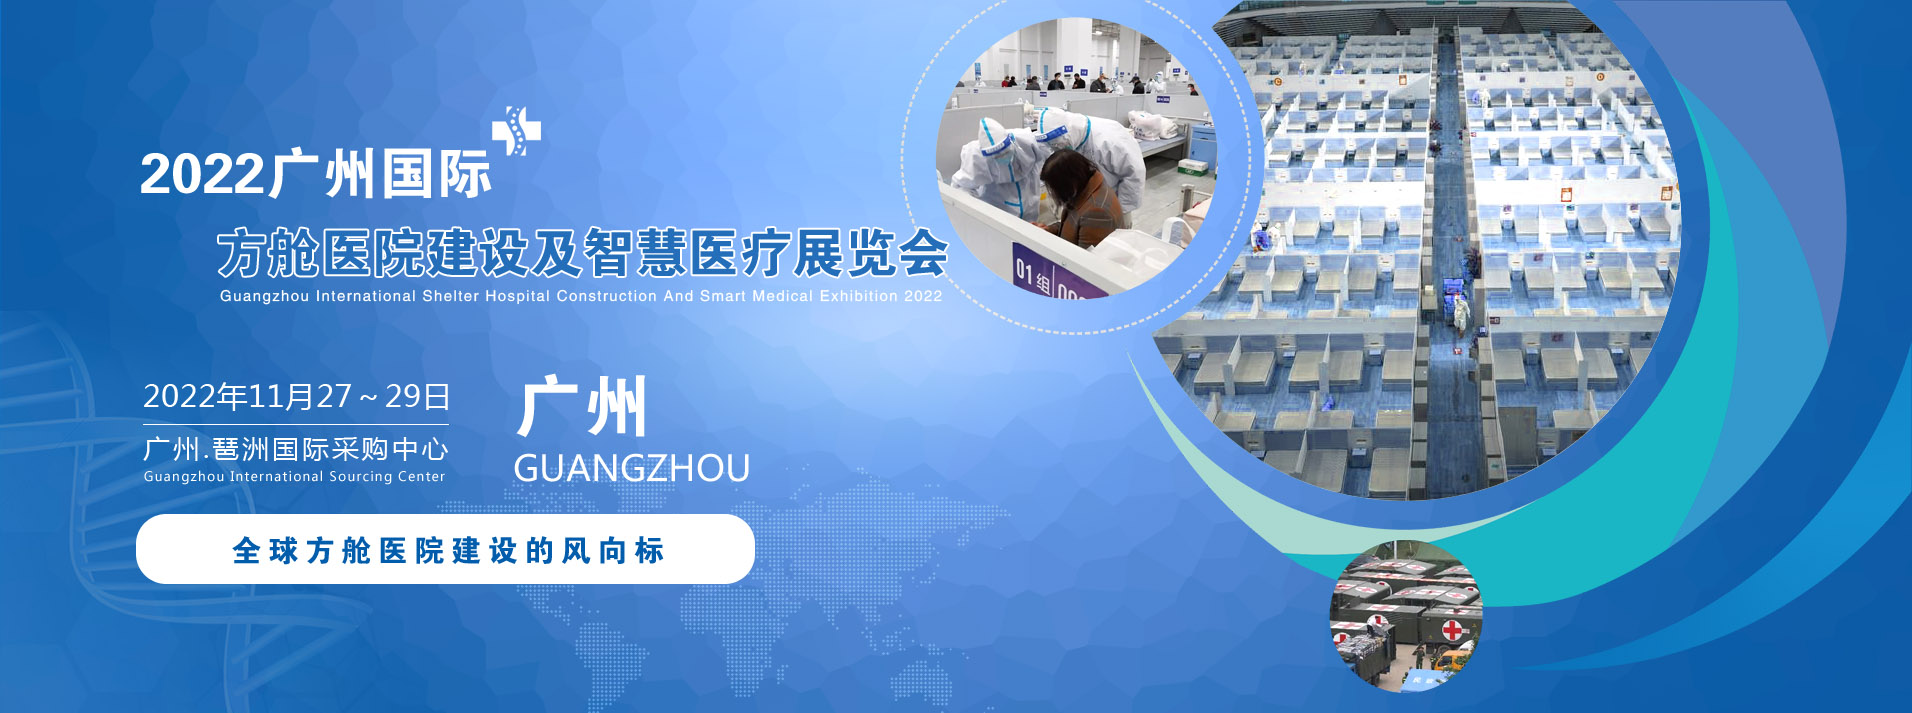 2022廣州國際方艙醫院建設及智慧醫療展覽會.jpg